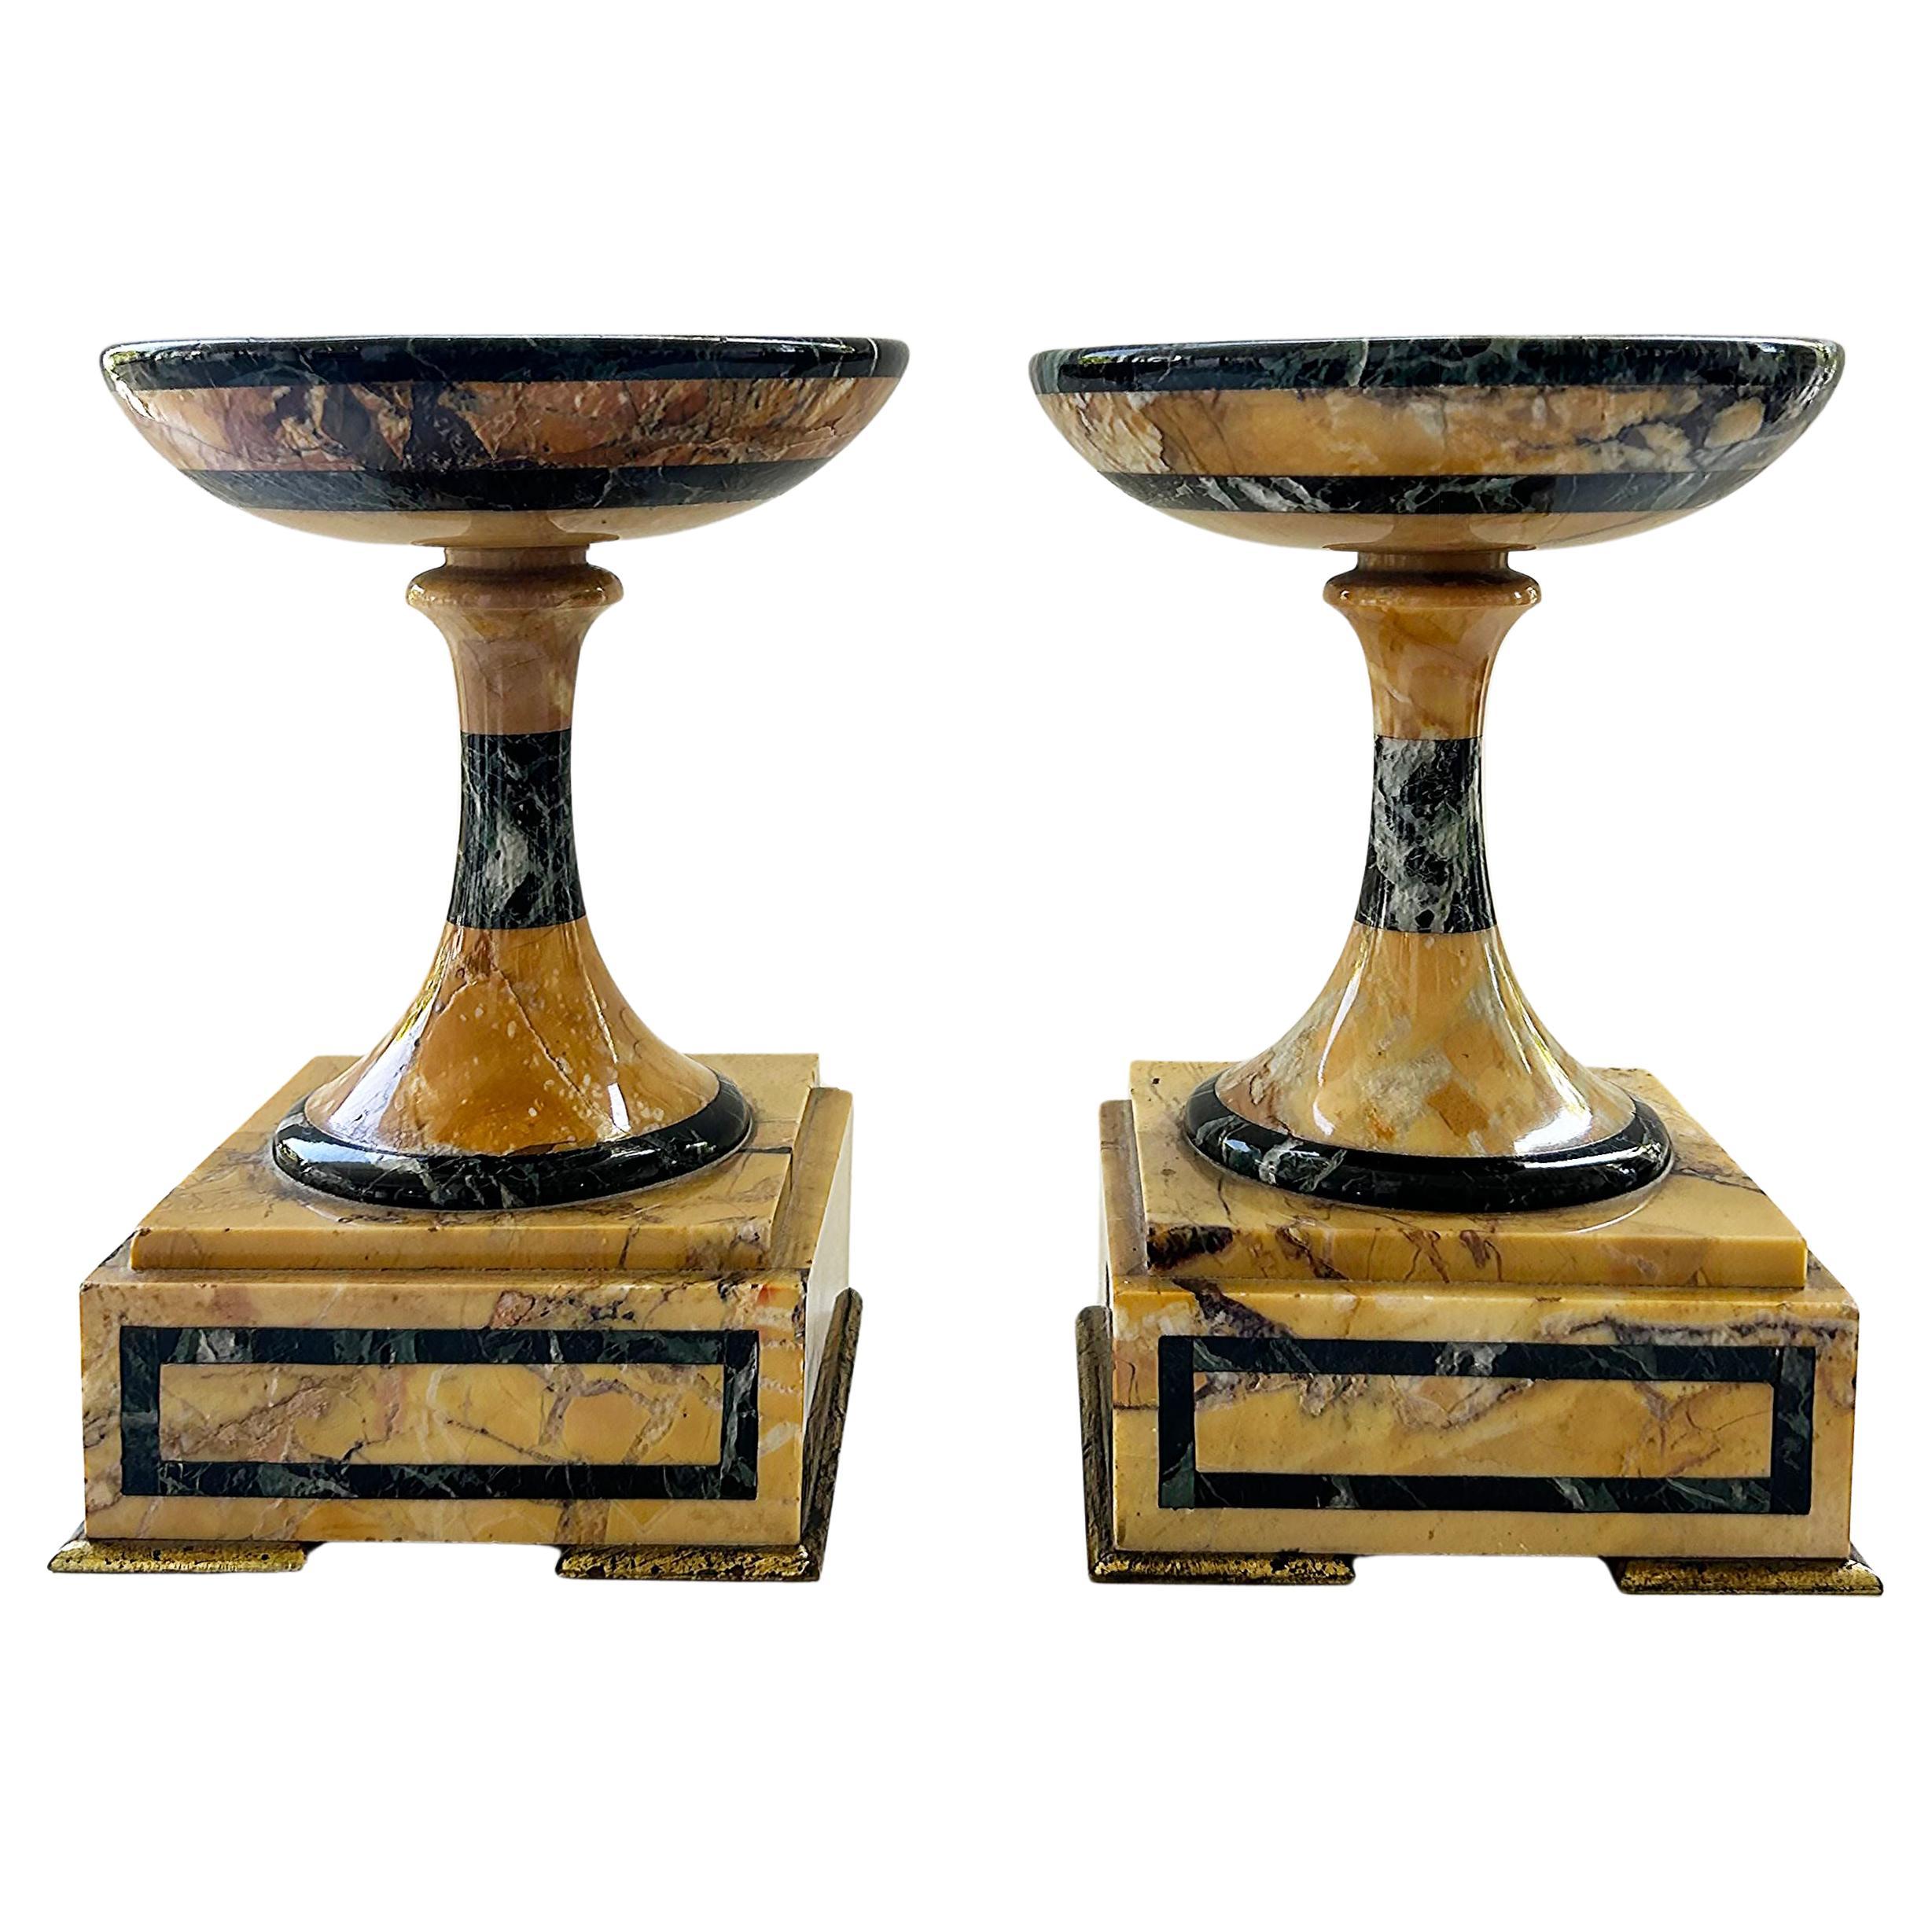 Italian Grand Tour Marble and Gilt Bronze Garniture Tazzas, a Pair